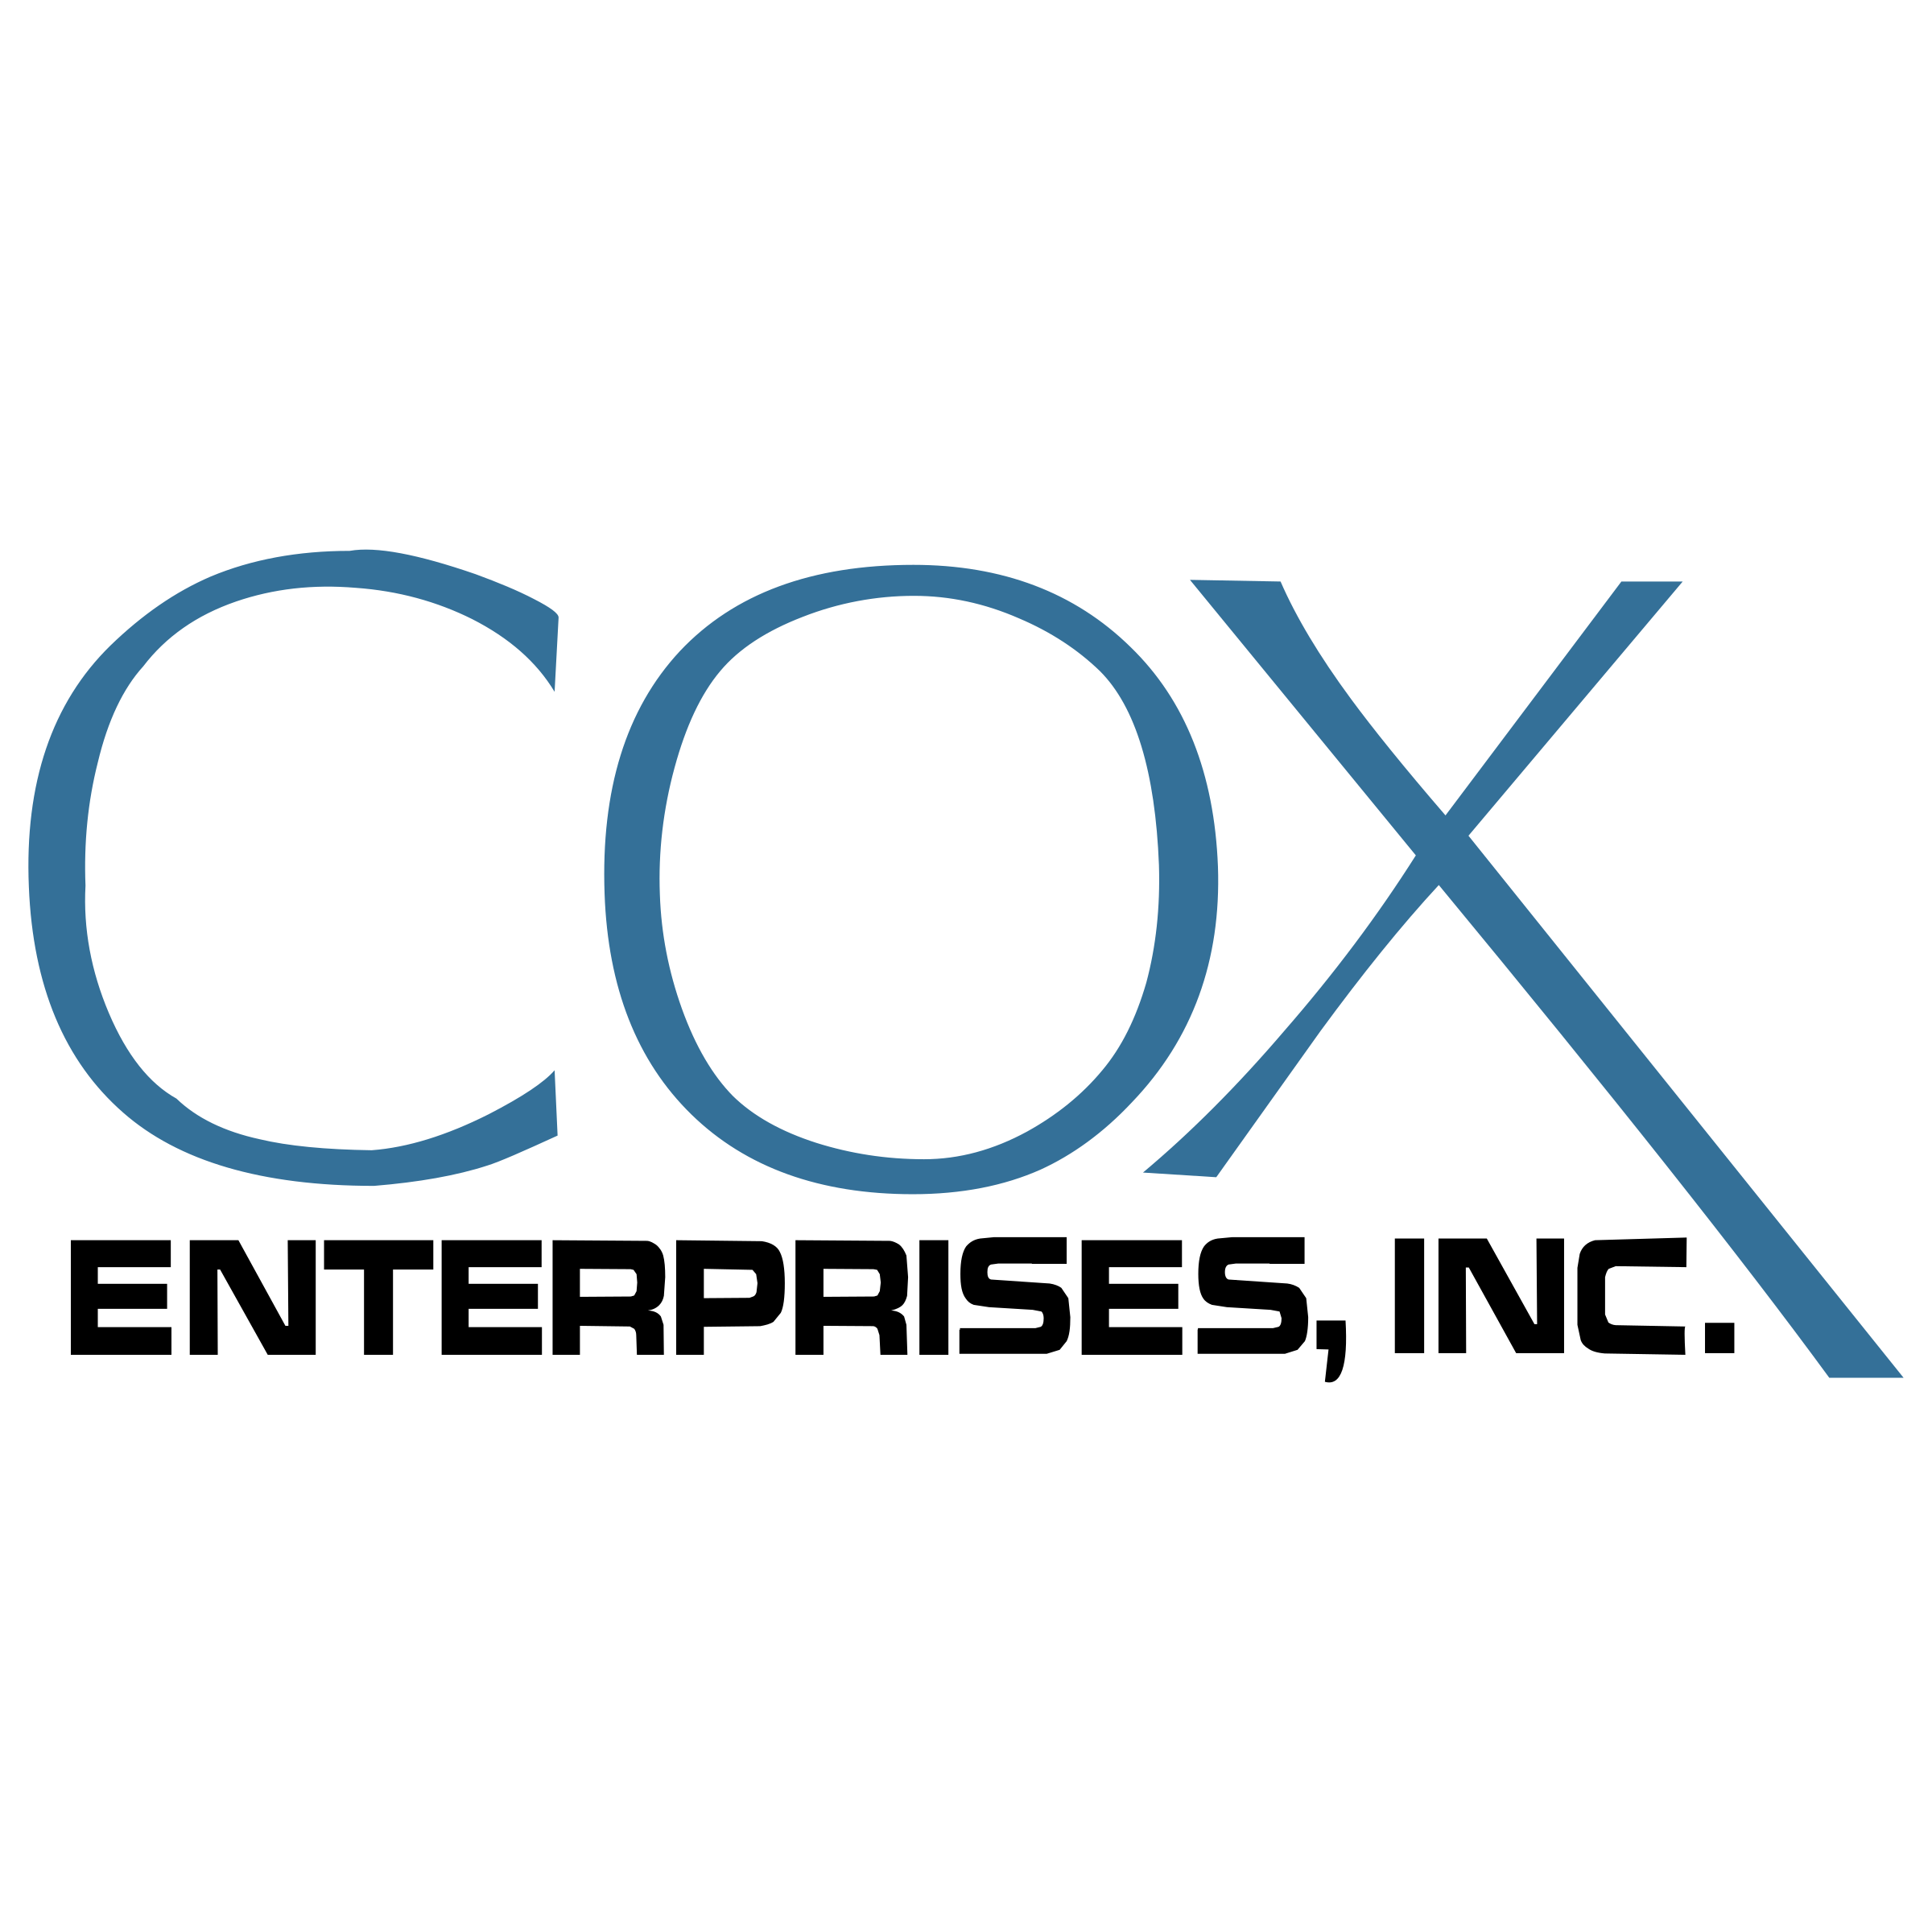 cox-enterprises-logo-png-transparent.png